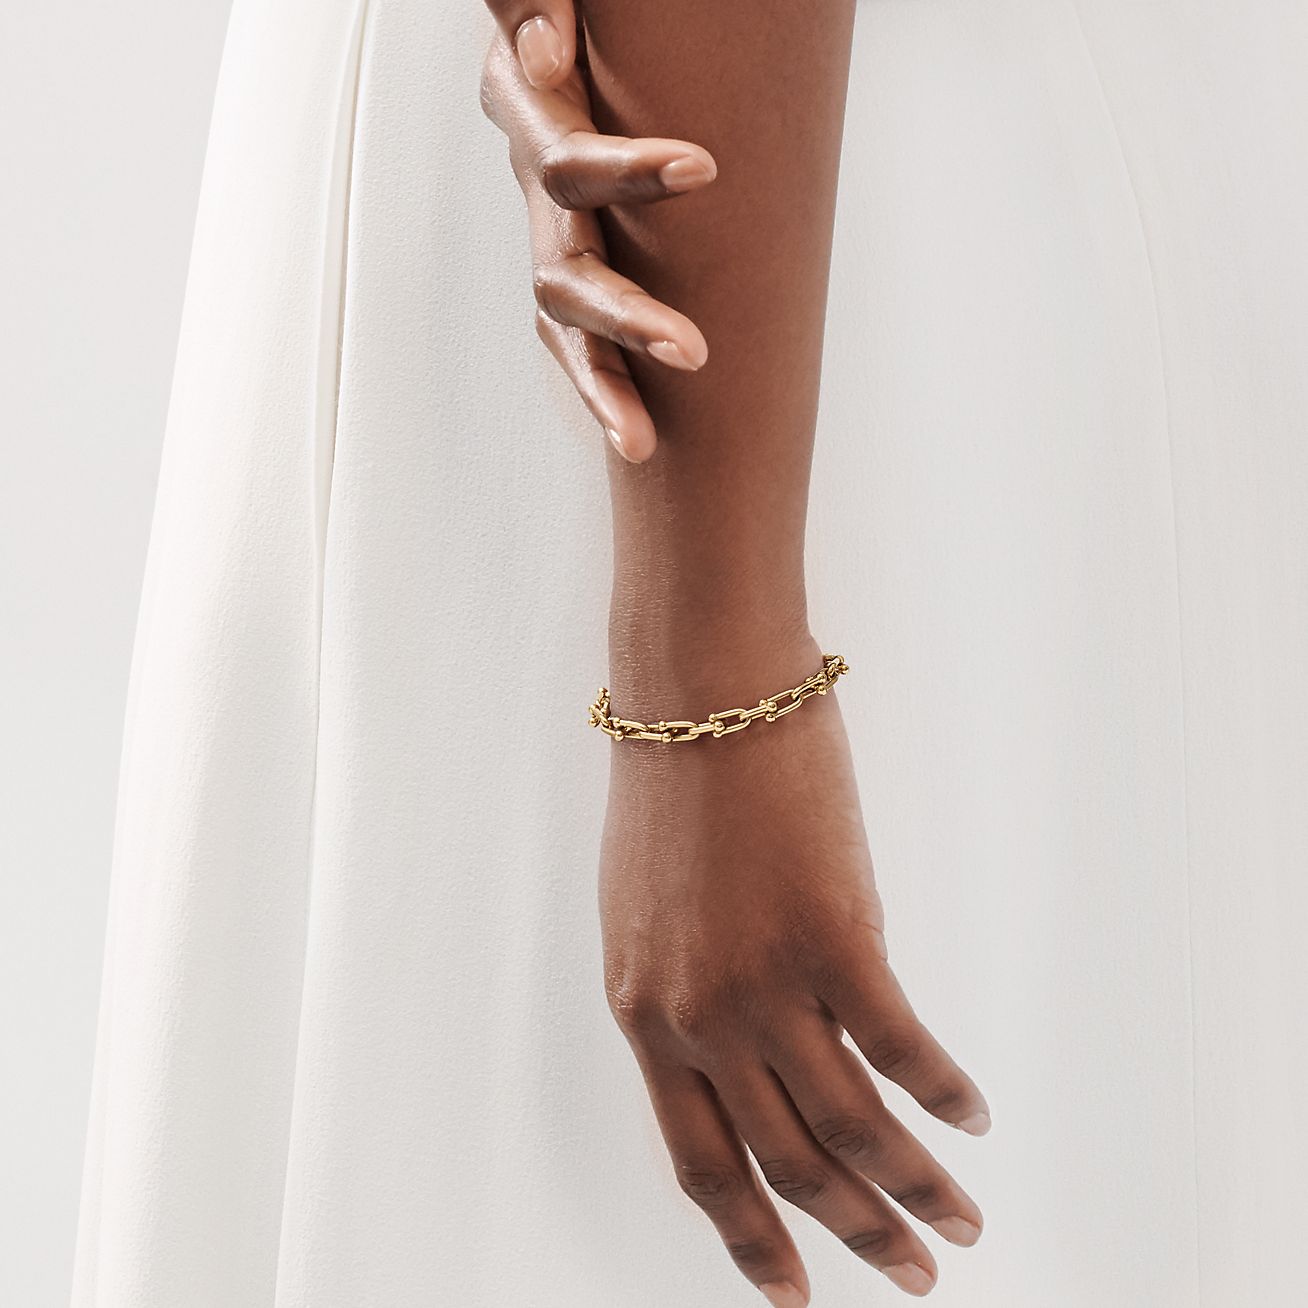 Bold Gold Chain Bracelet Gold Filled Large Chain Bracelet - Etsy | Gold  bracelet chain, Chain link bracelet, Statement bracelet